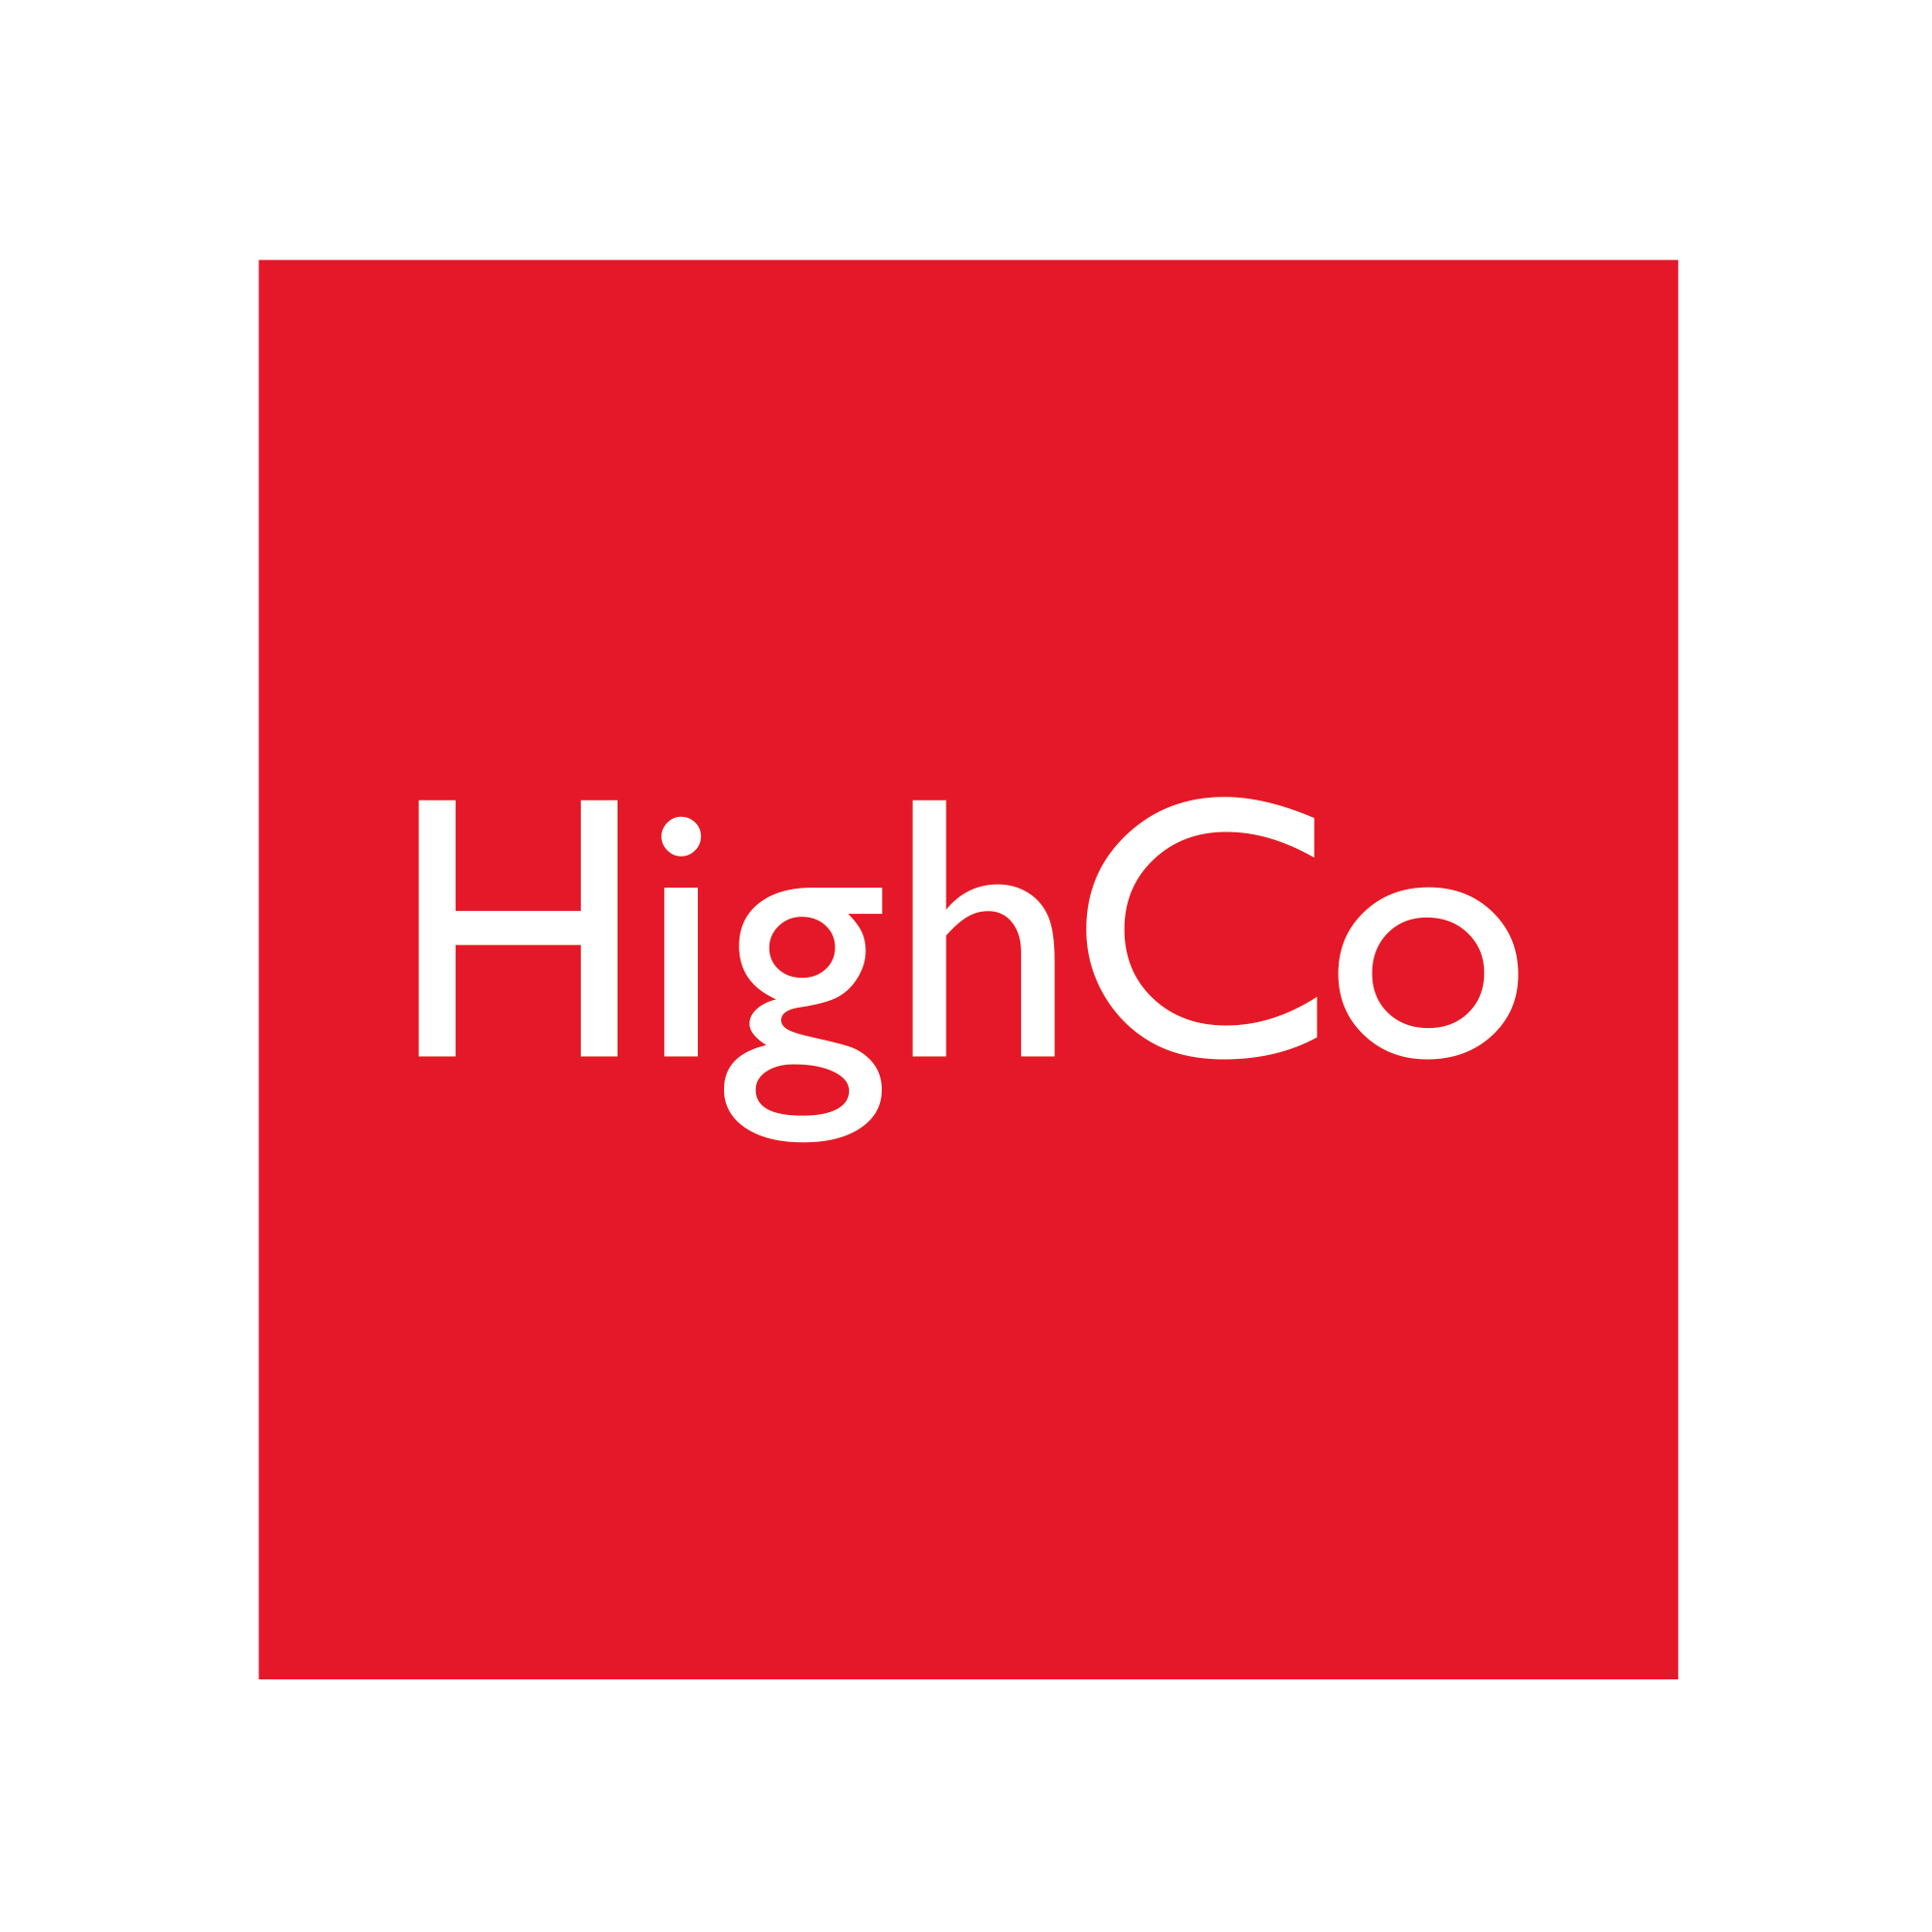 HighCo: SHAREHOLDING